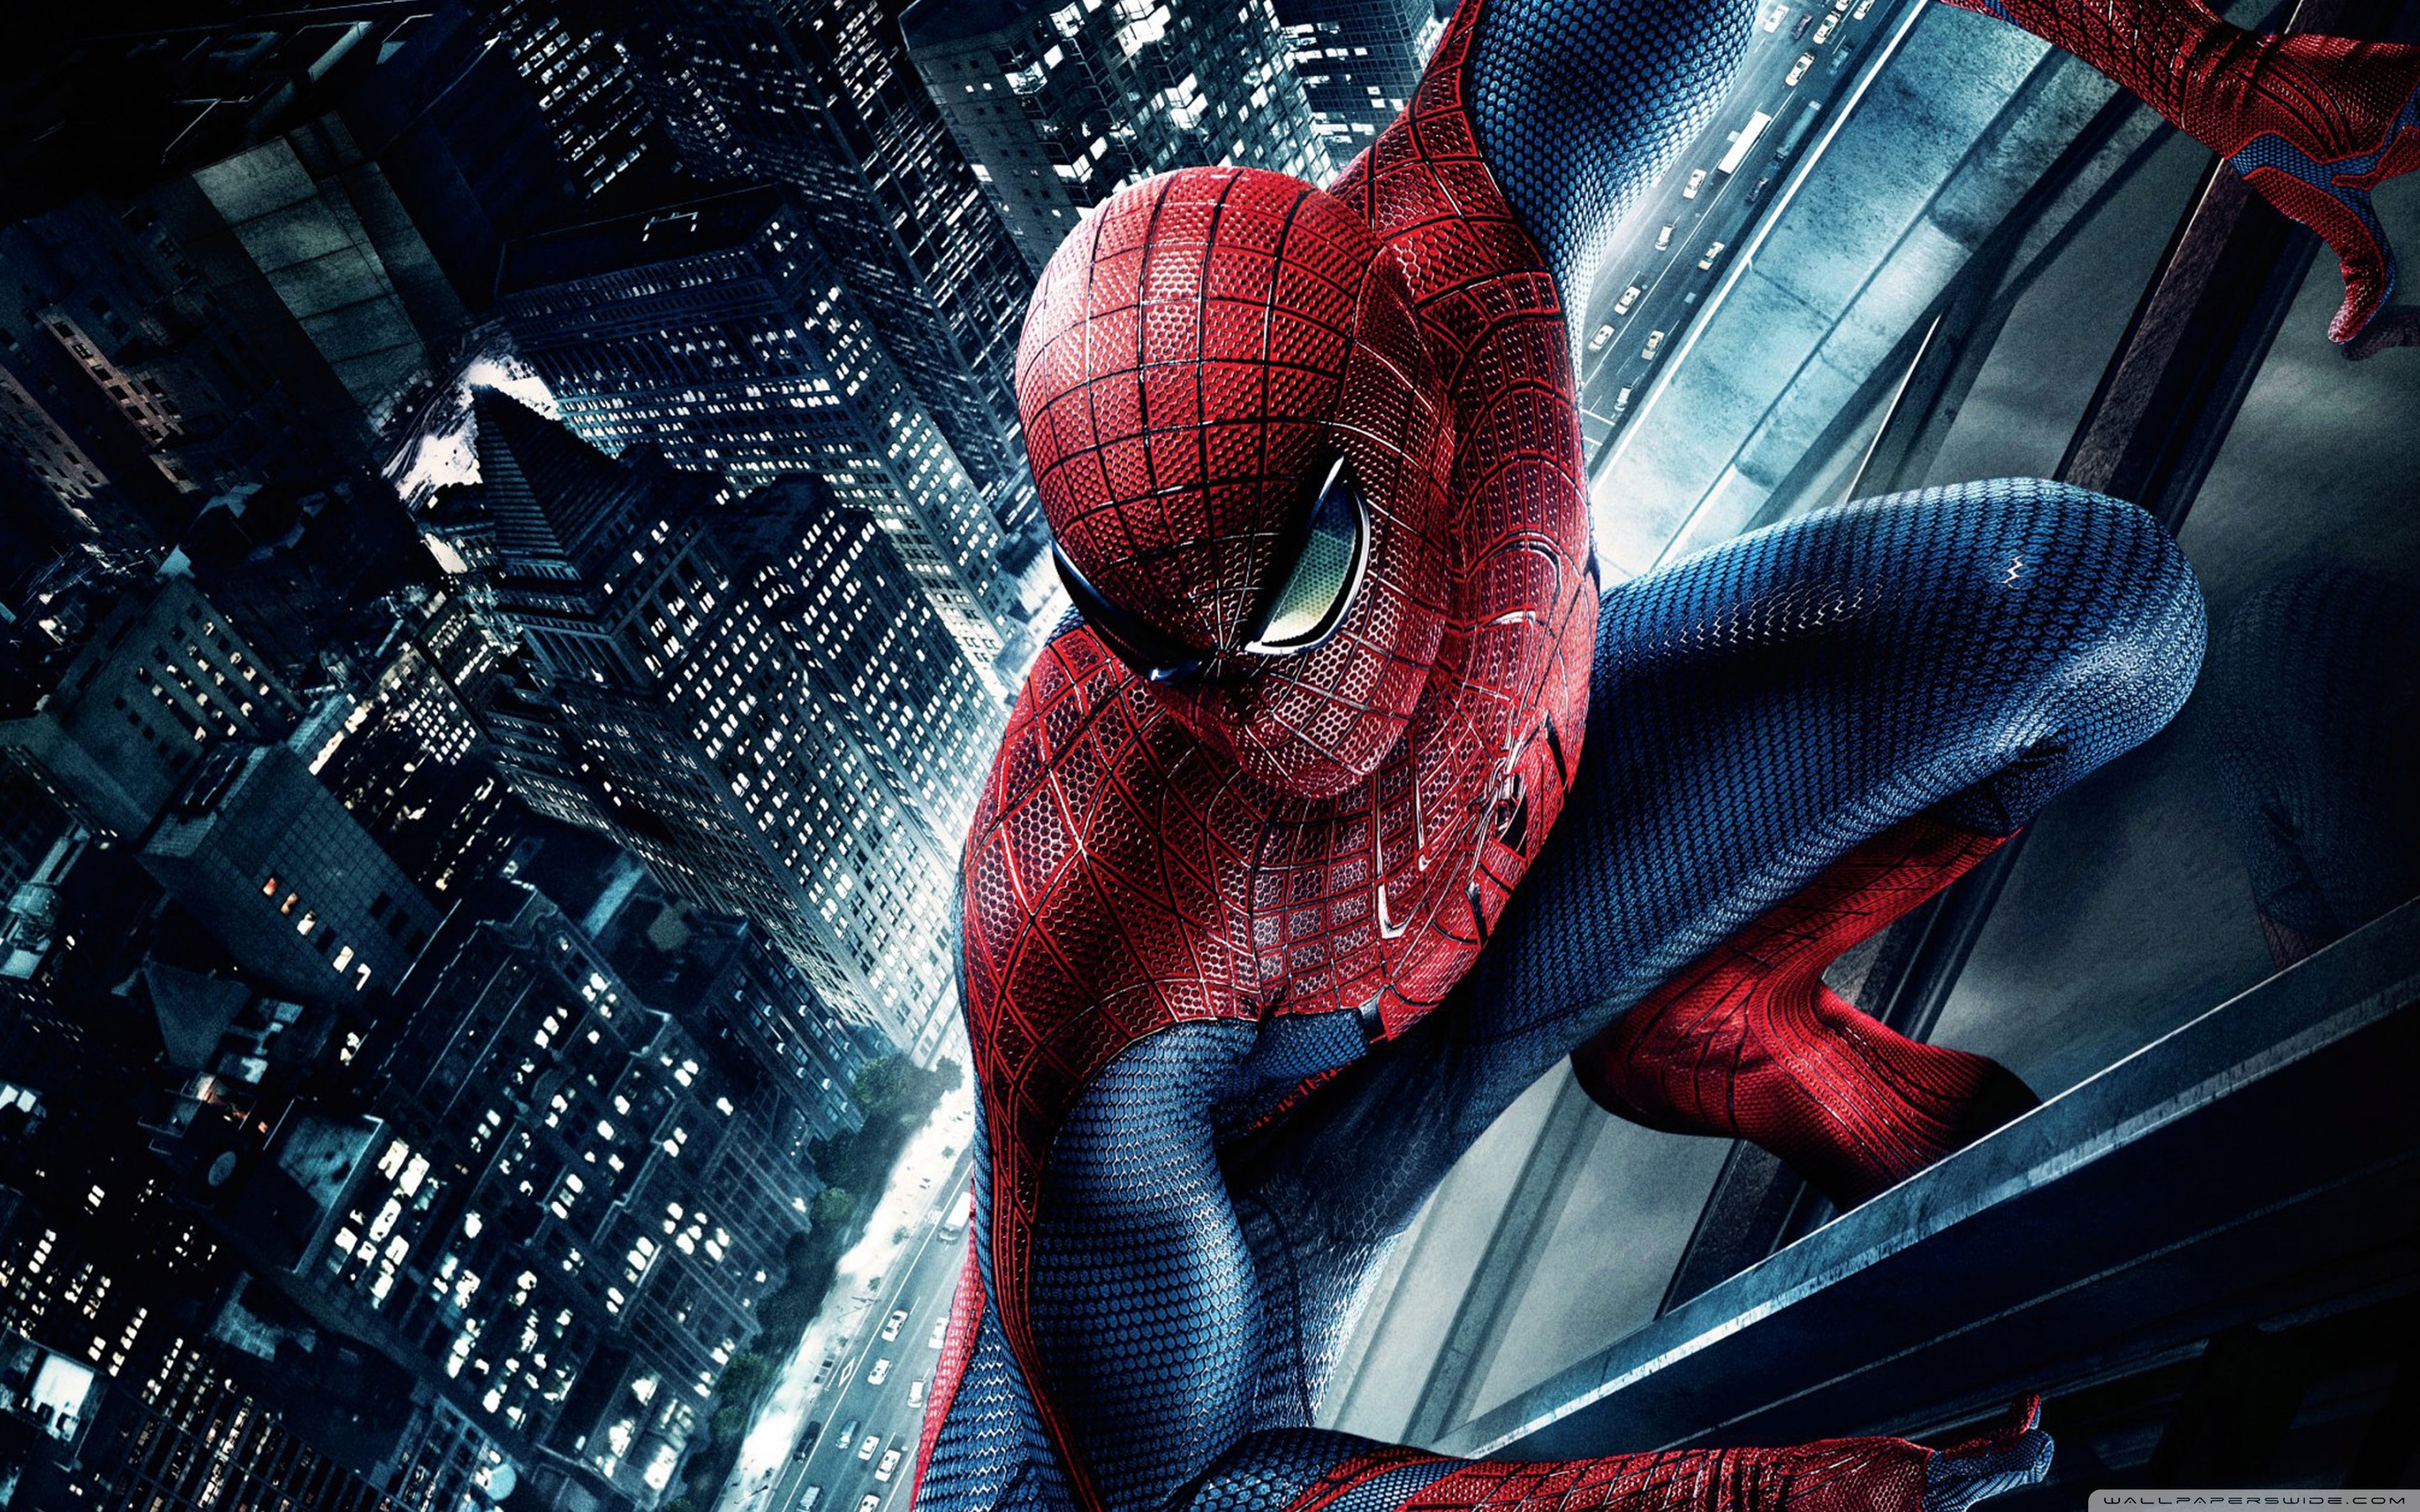 fond d'écran spiderman,homme araignée,personnage fictif,super héros,oeuvre de cg,conception graphique